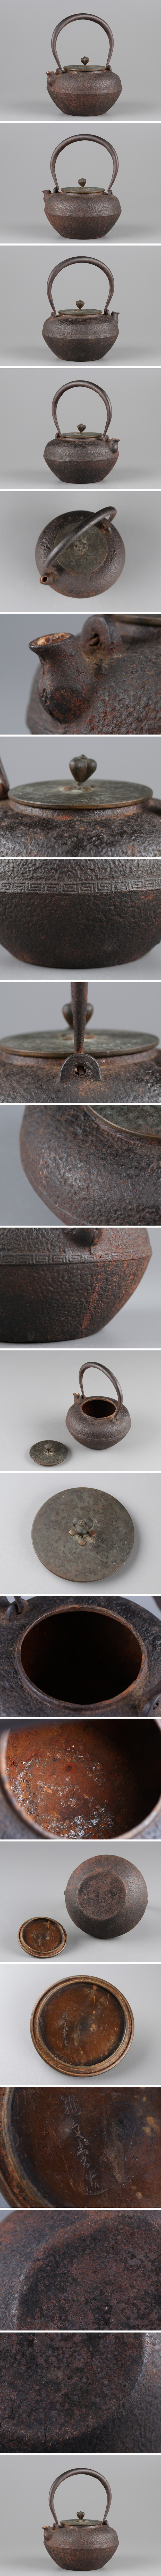 大特価特価煎茶道具 龍文堂造 銅製蓋 時代鉄瓶 時代物 極上品 初だし品 4532 鉄瓶